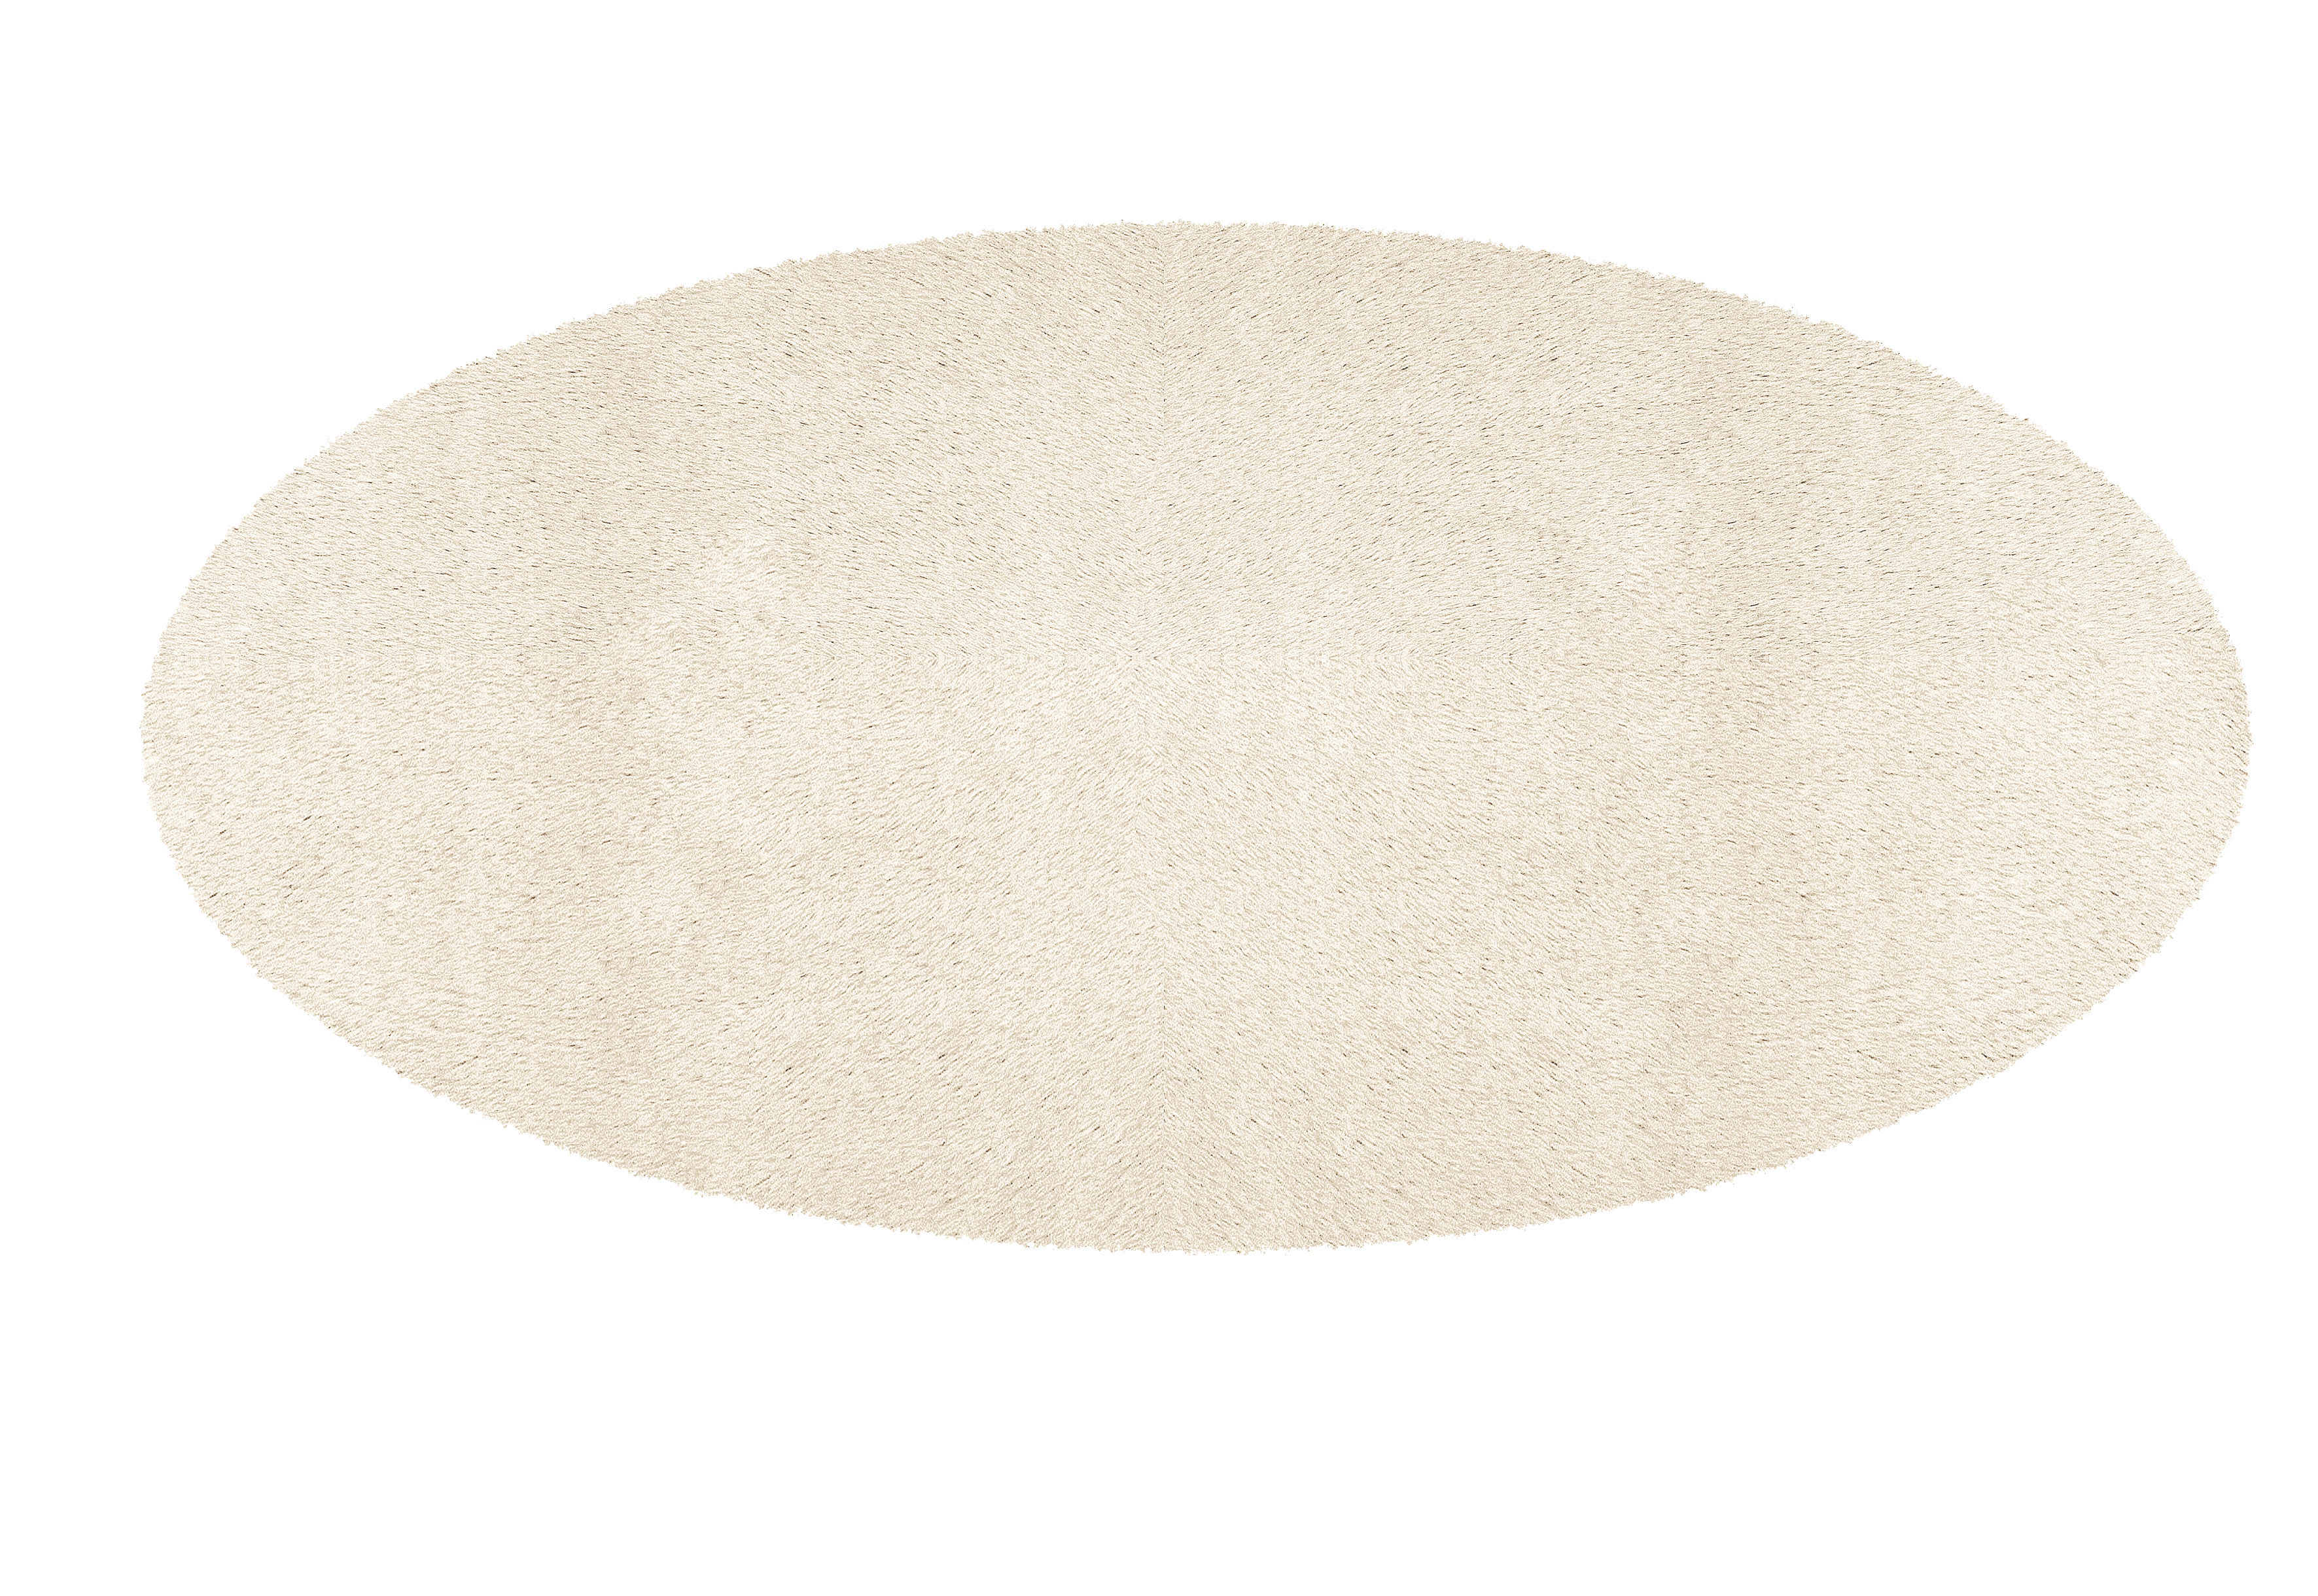 Badteppich Cony Oval, Beige, 60x110 cm